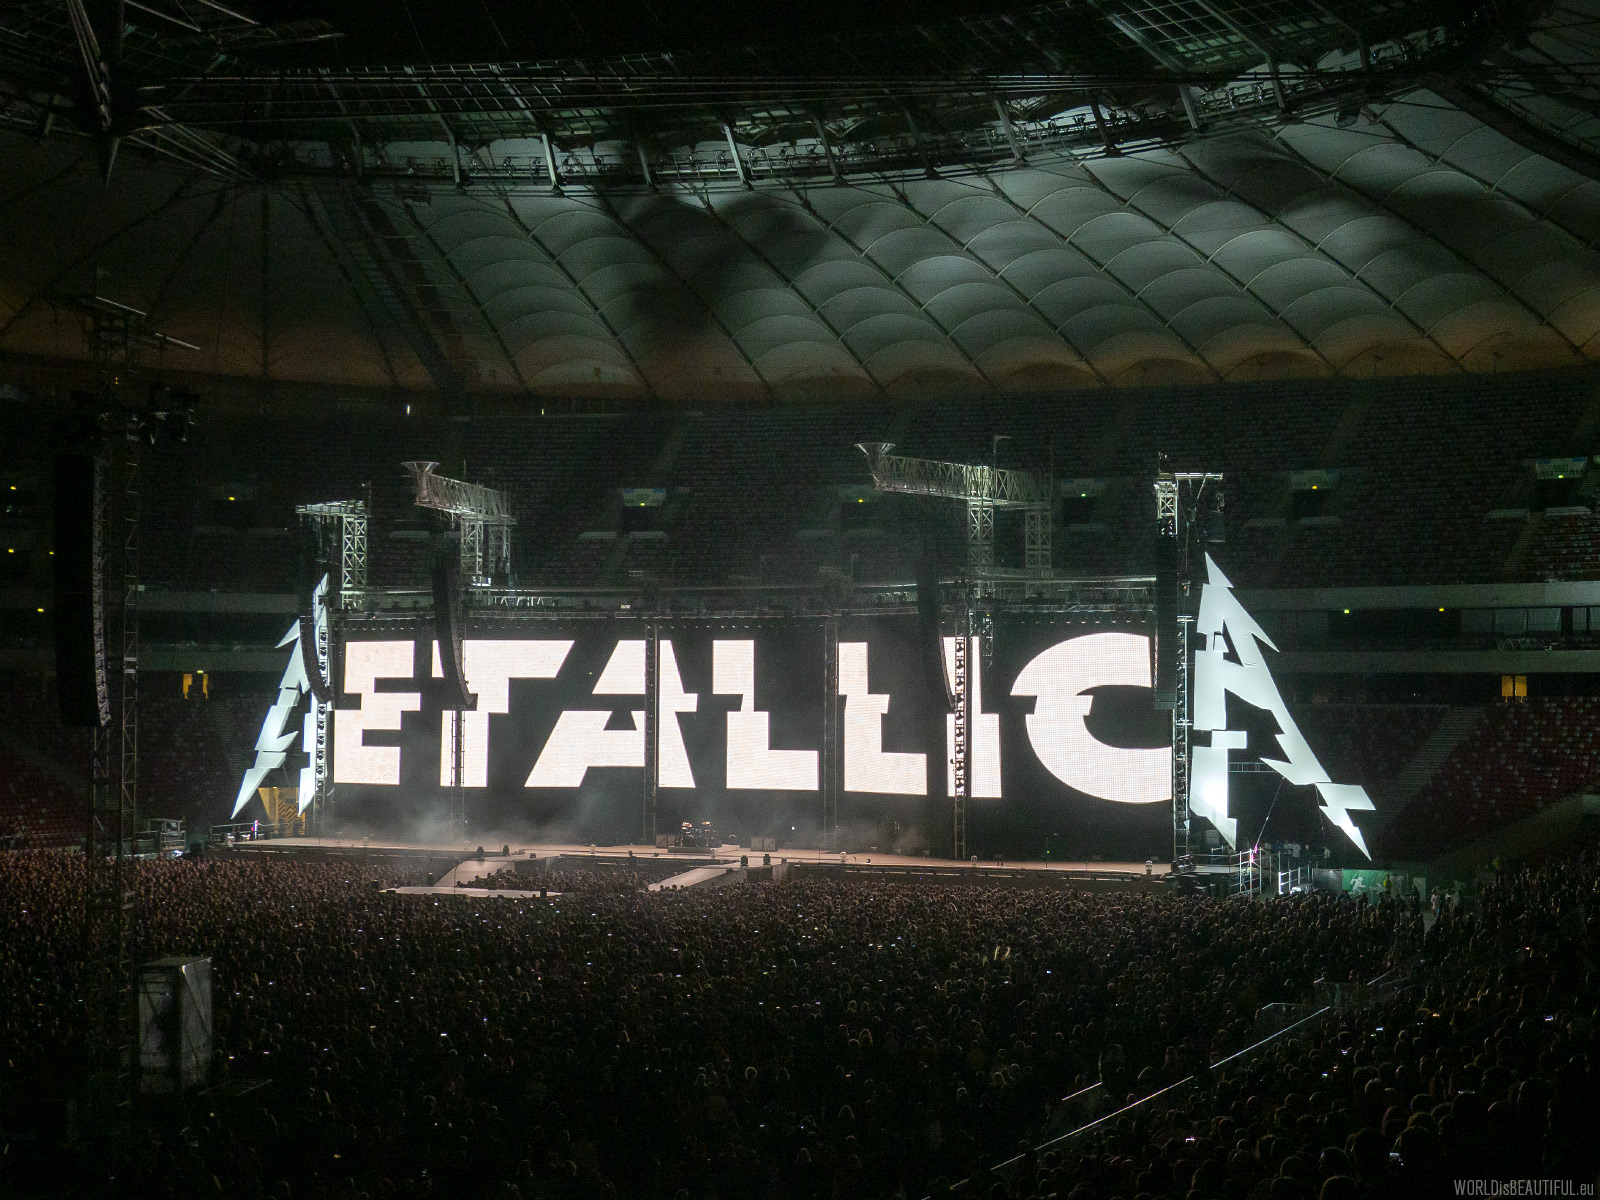 Concert Metallica in Warsaw